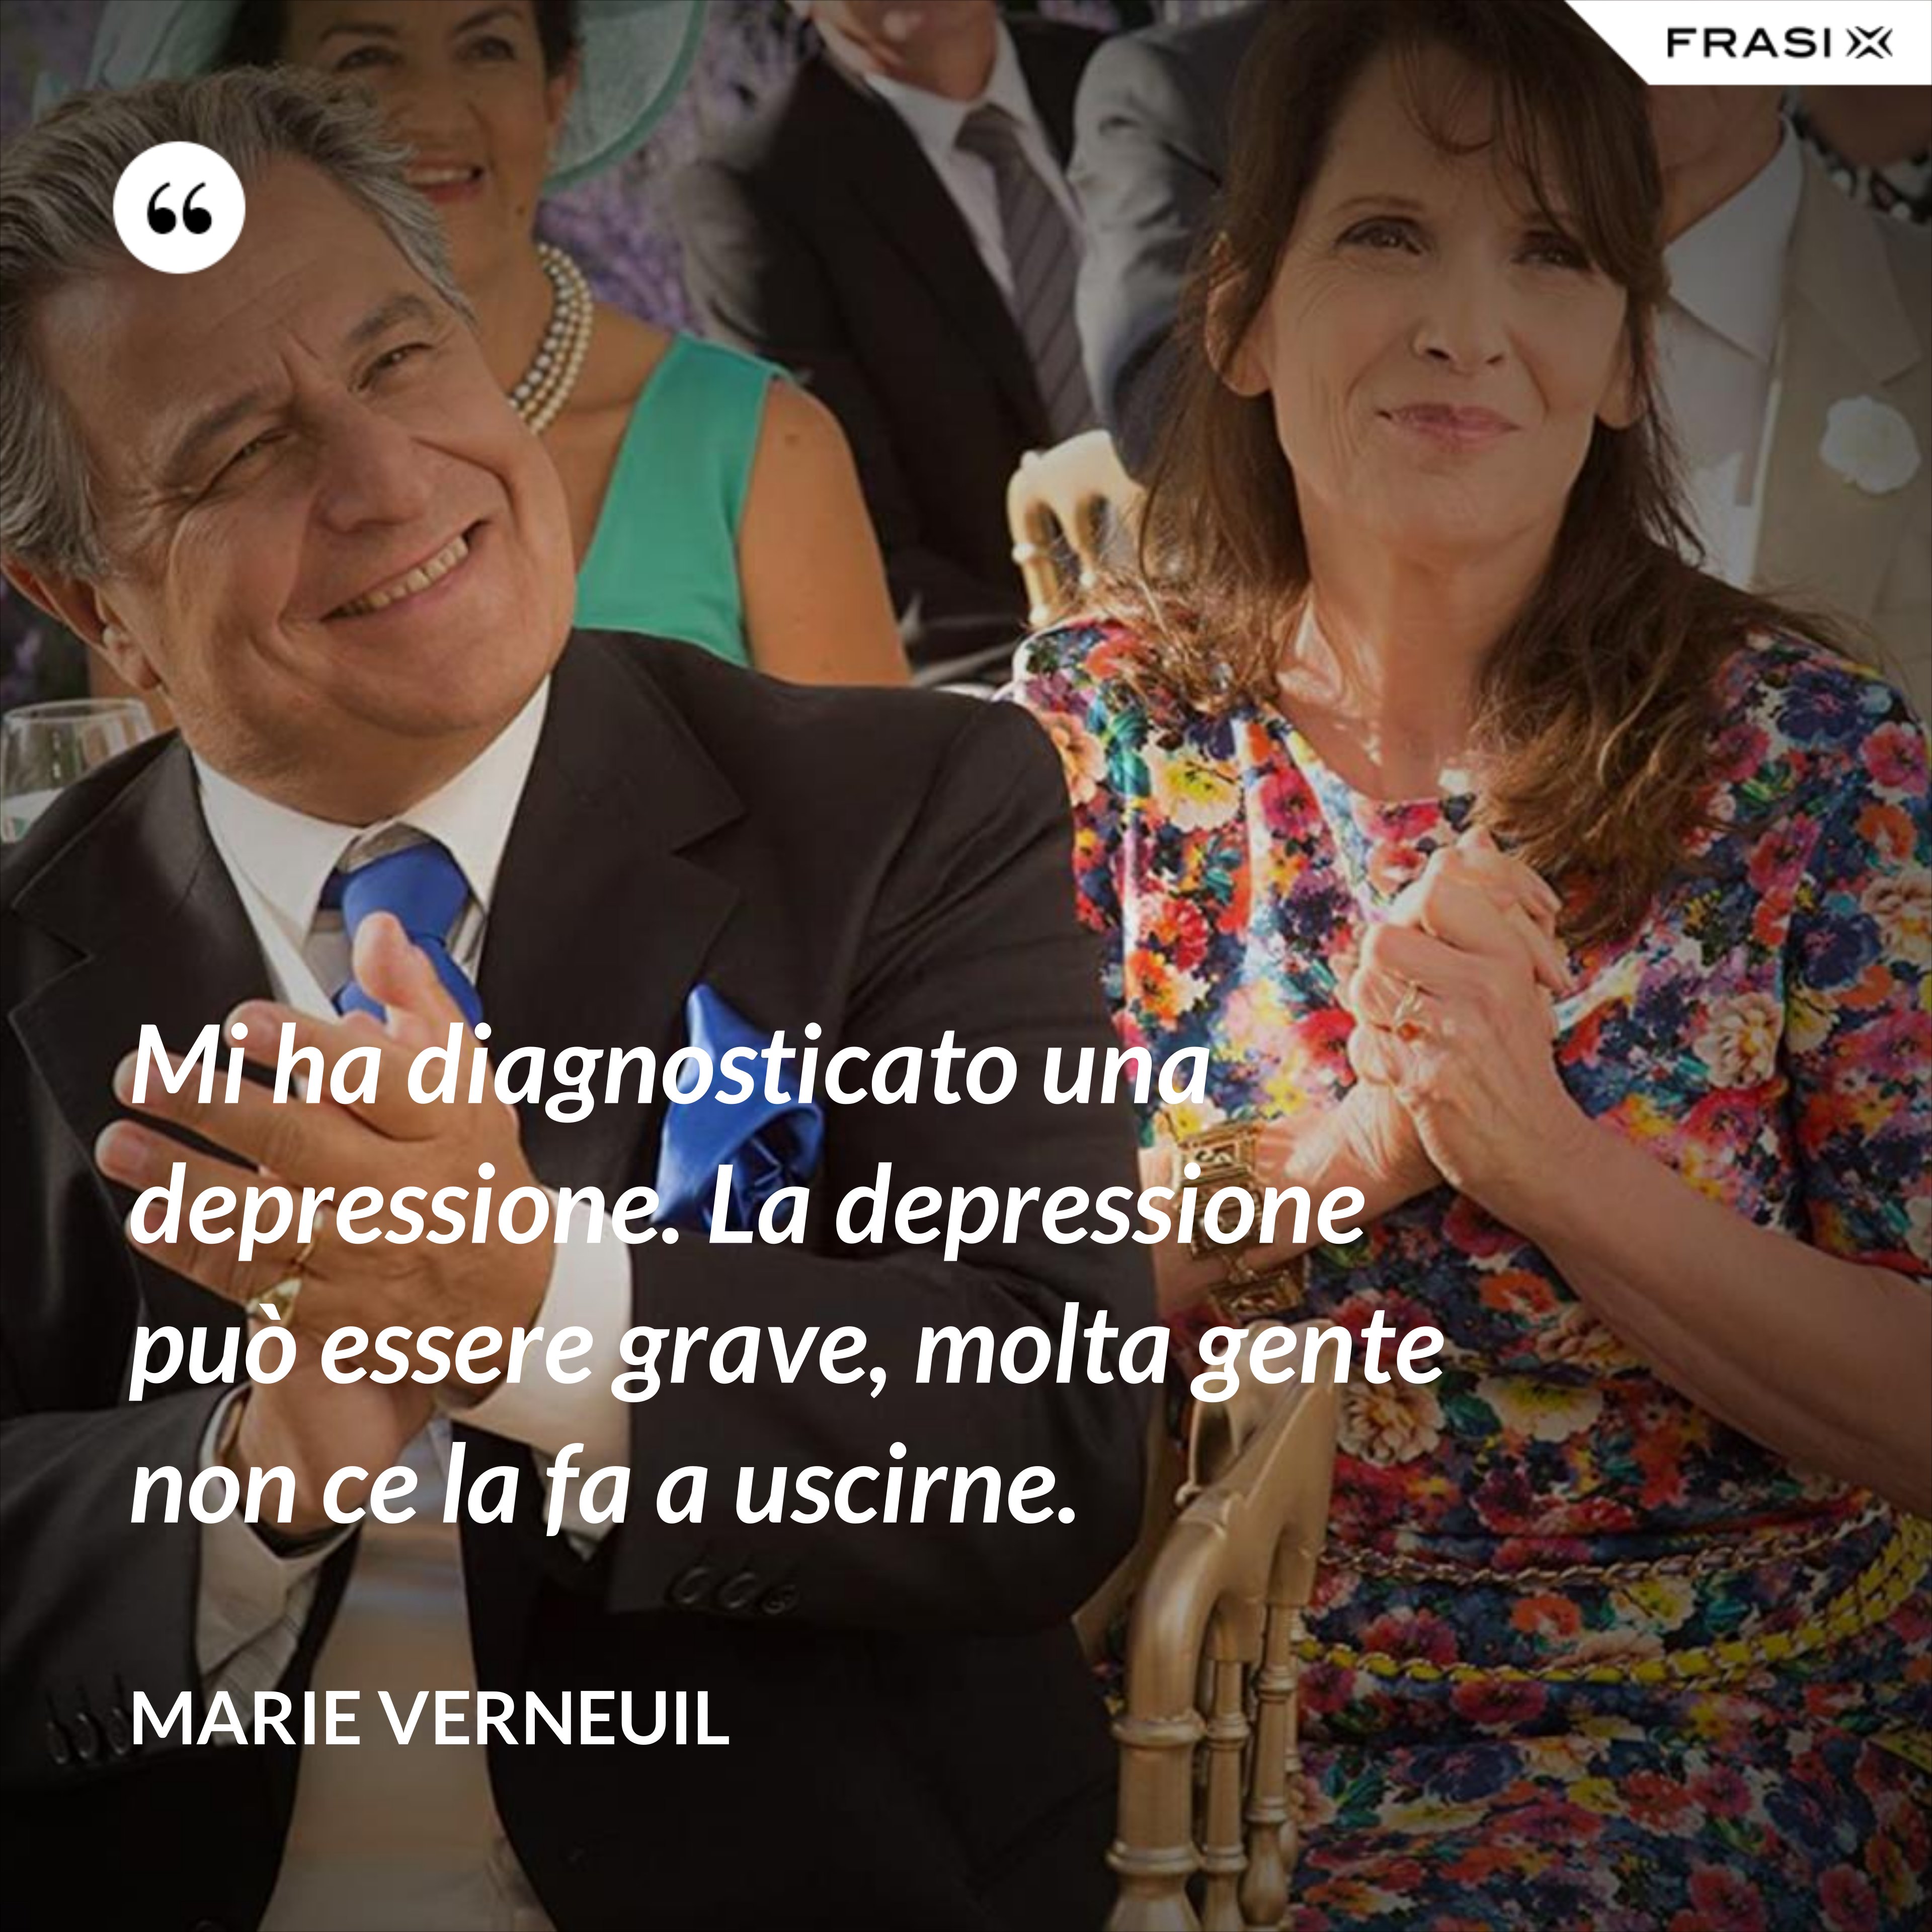 Mi ha diagnosticato una depressione. La depressione può essere grave, molta gente non ce la fa a uscirne. - Marie Verneuil